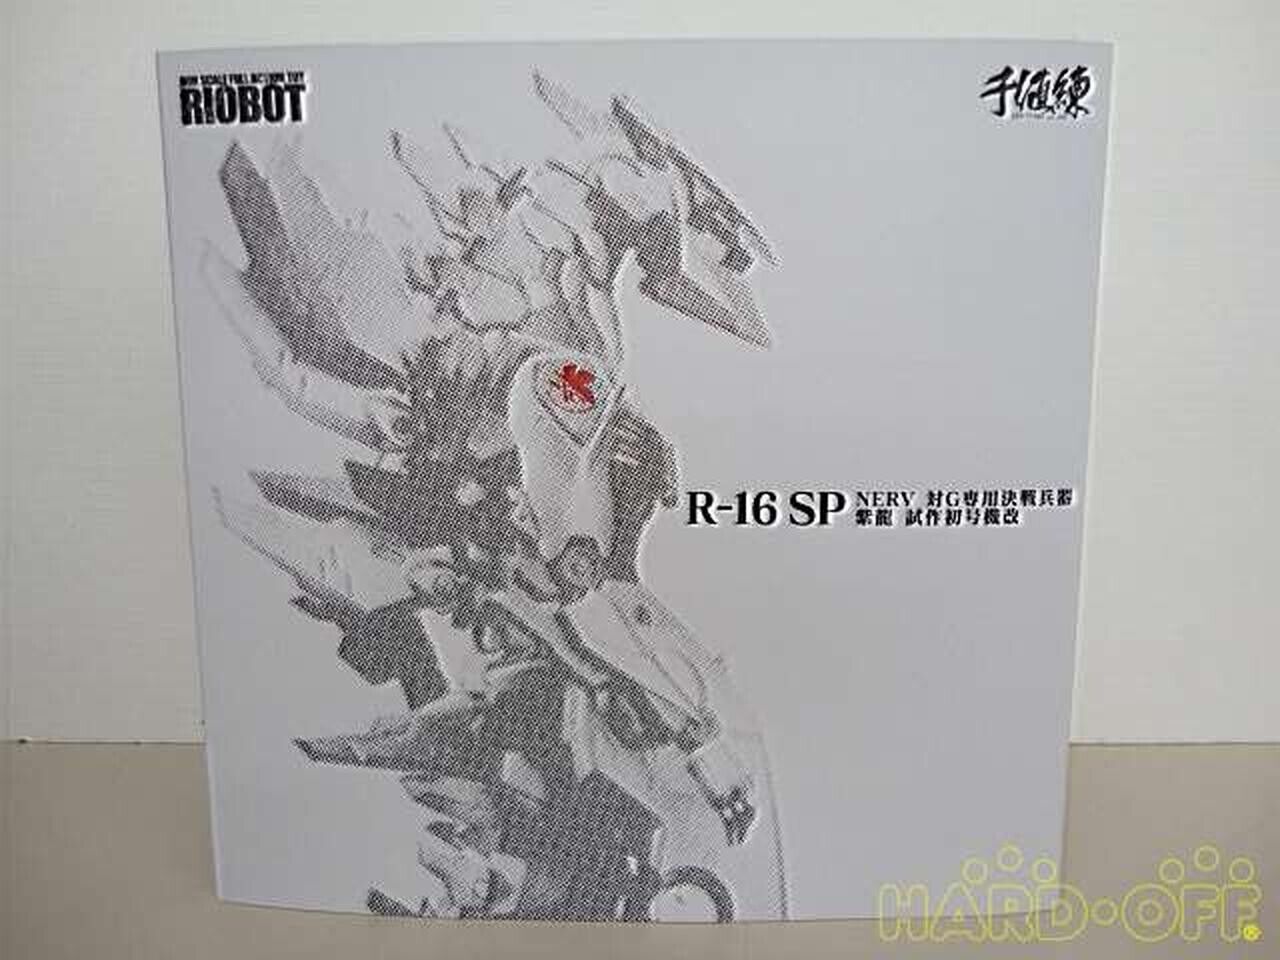 Sentinel RIOBOT Godzilla vs Evangelion NERV vs G Exclusive Battle Arms Shiryu